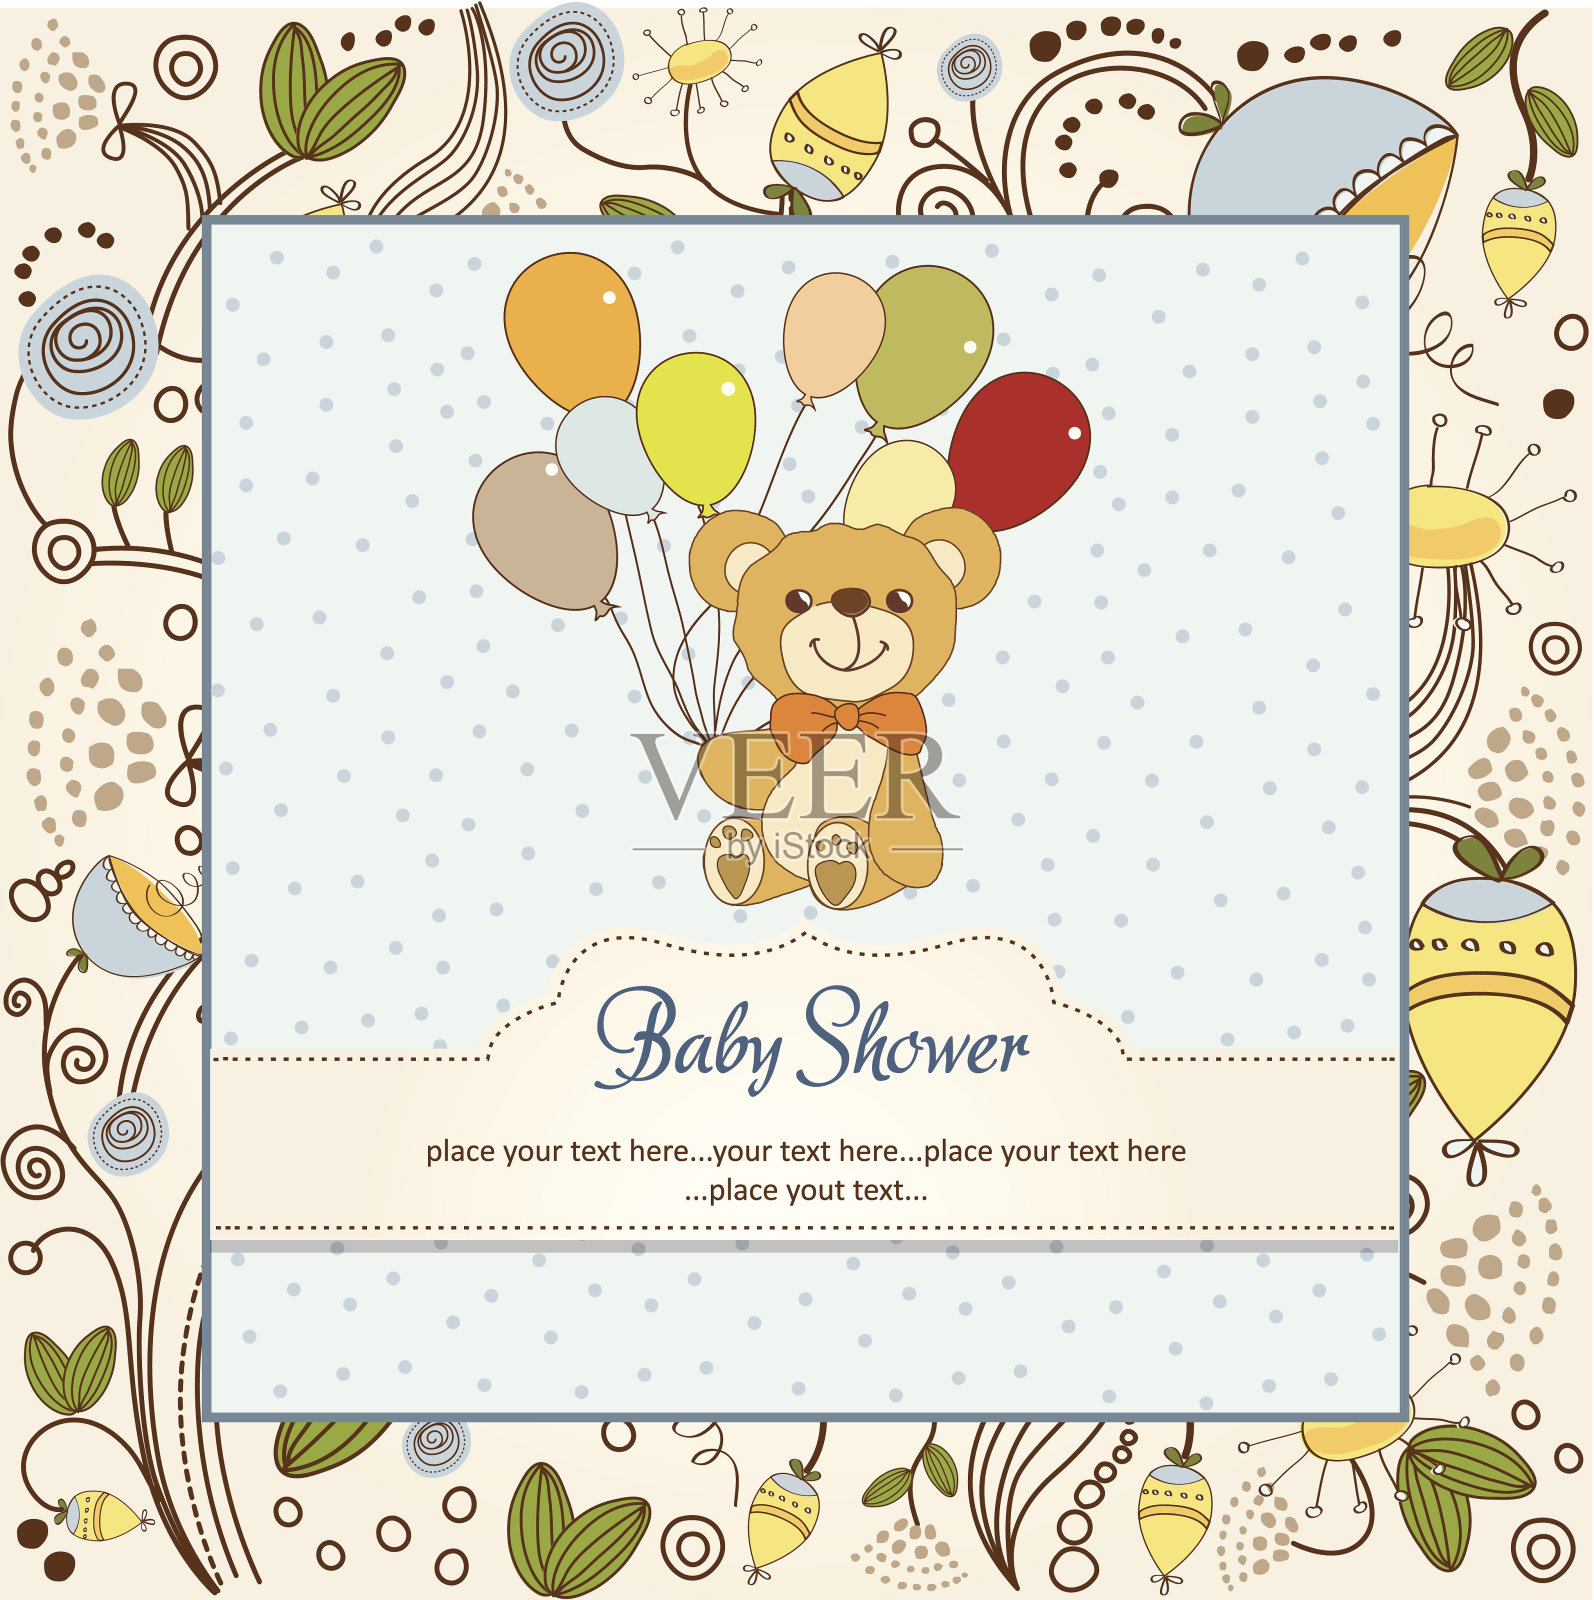 婴儿送礼卡和可爱的泰迪熊设计模板素材